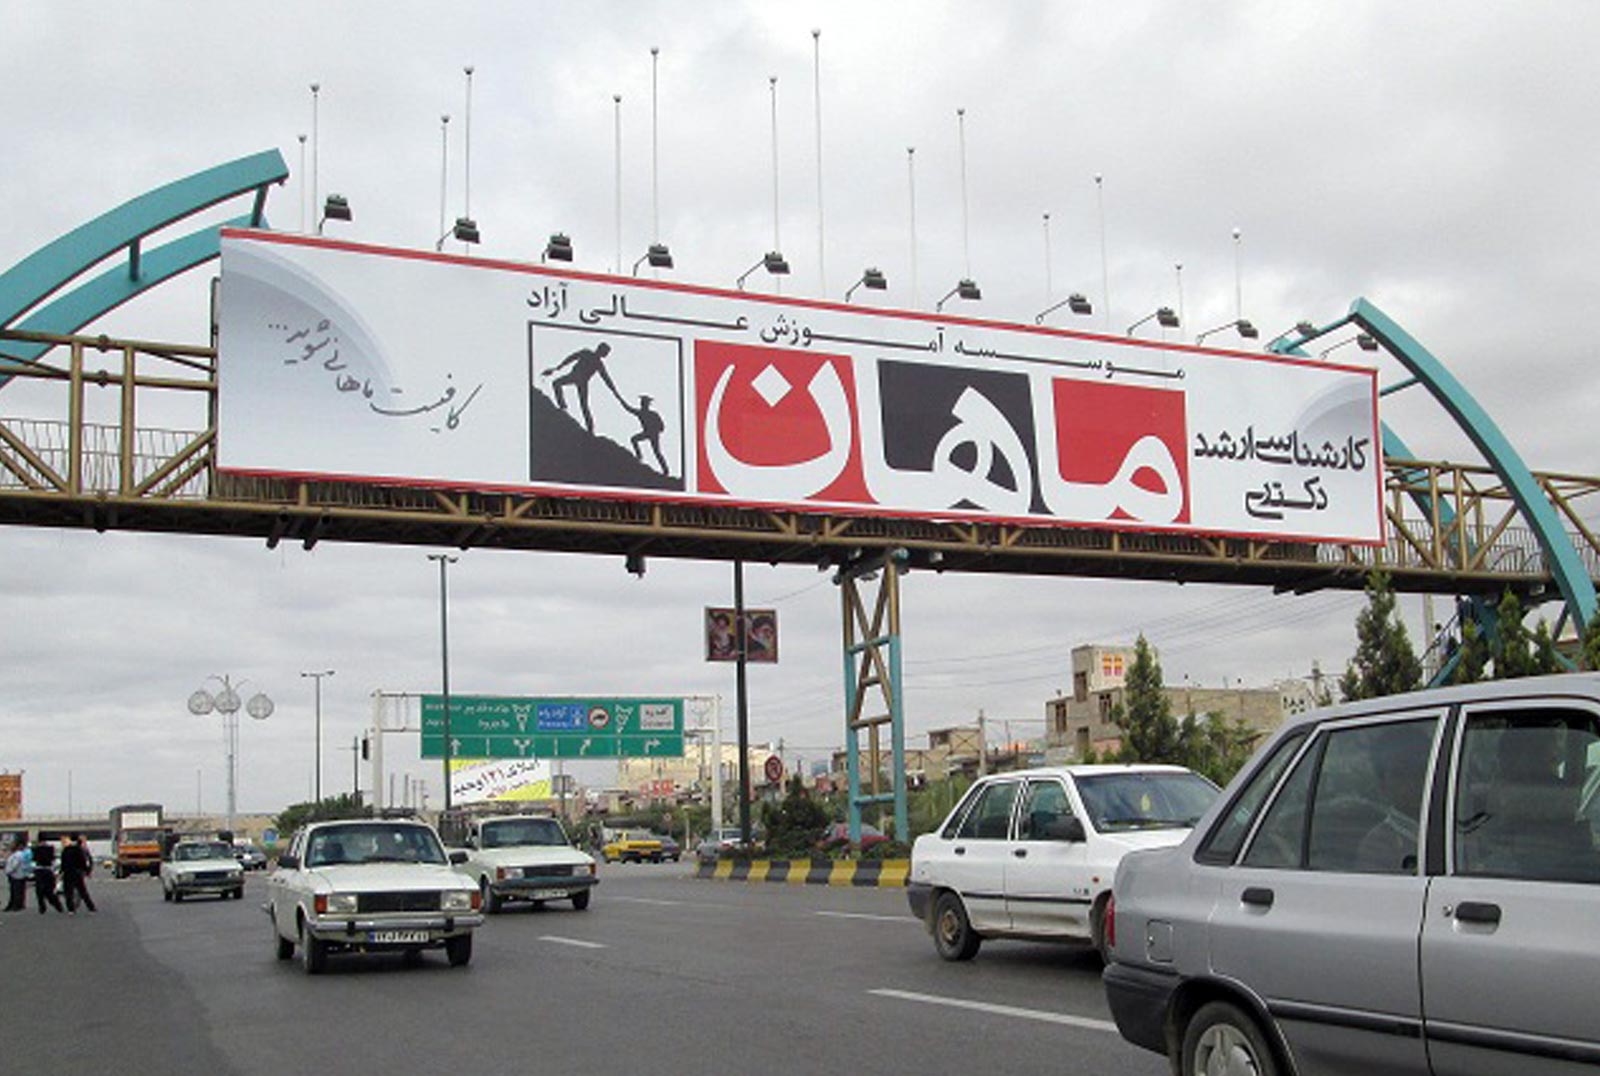 هزینه باورنکردنی اجاره بیلبورد تبلیغاتی در تهران